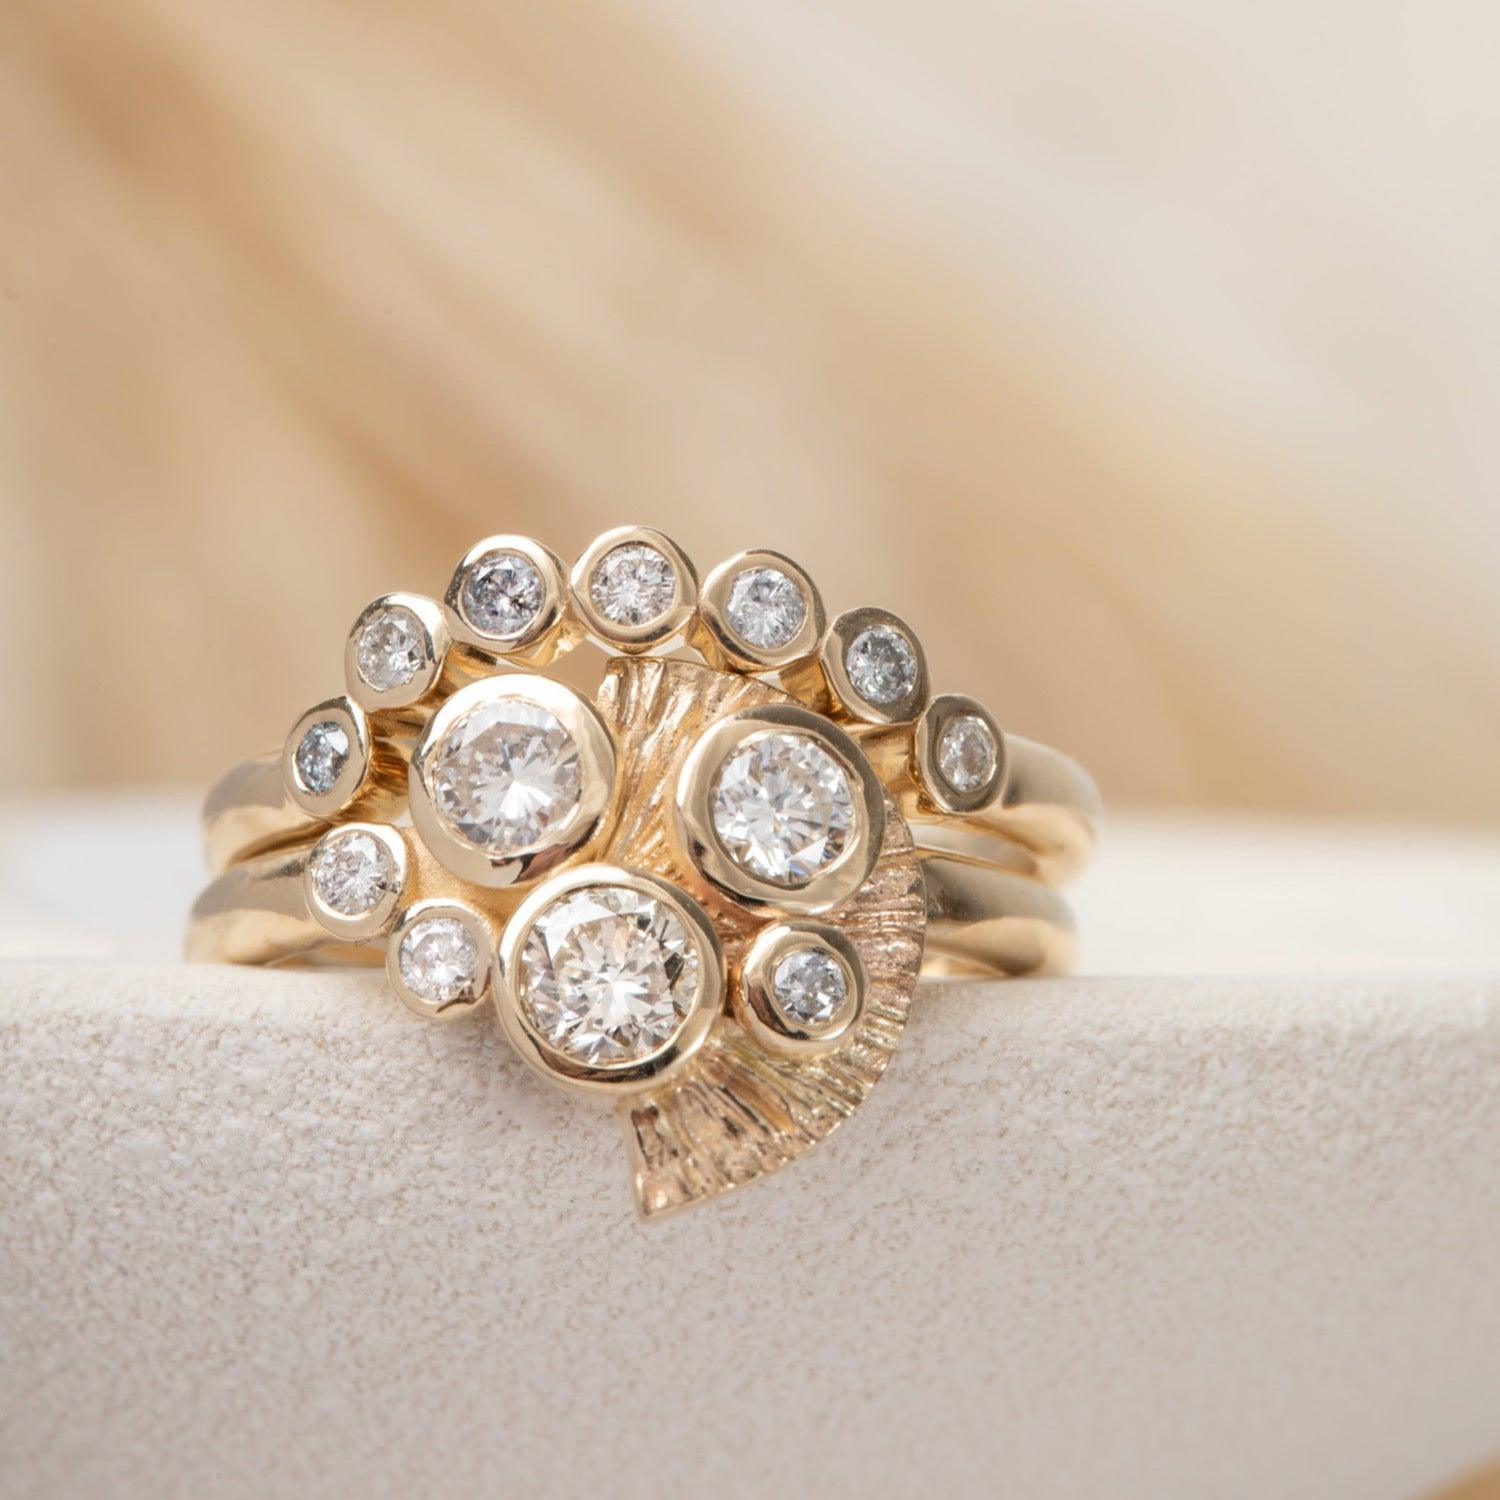 Marian - Gold rings with diamonds - Kat Cadegan